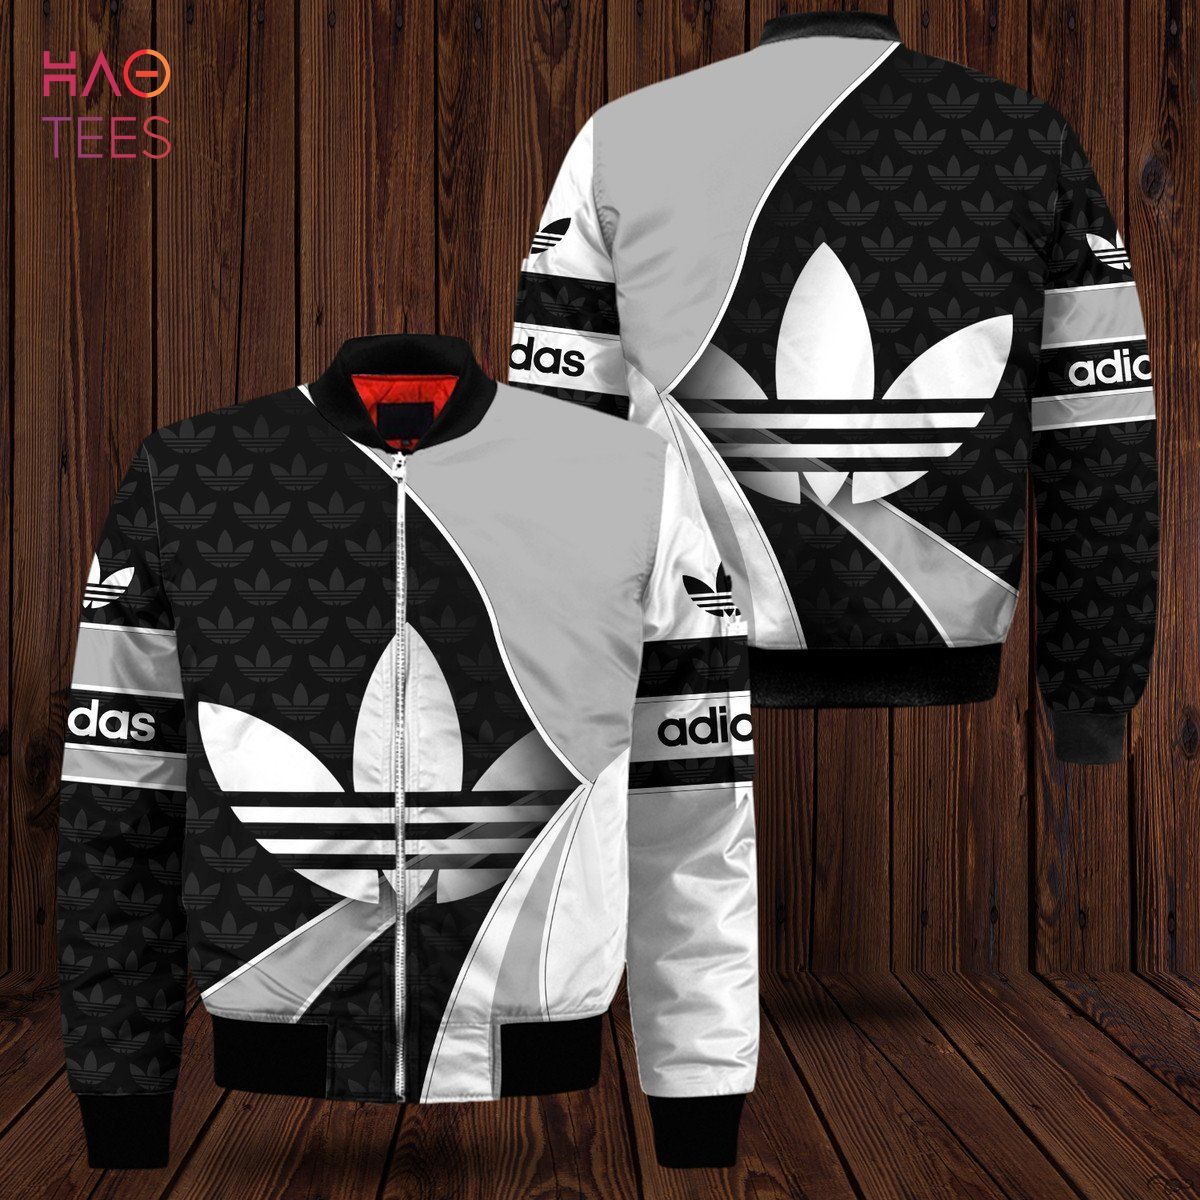 HOT Adidas Big Logo Luxury Brand Bomber Jacket Limited Edition